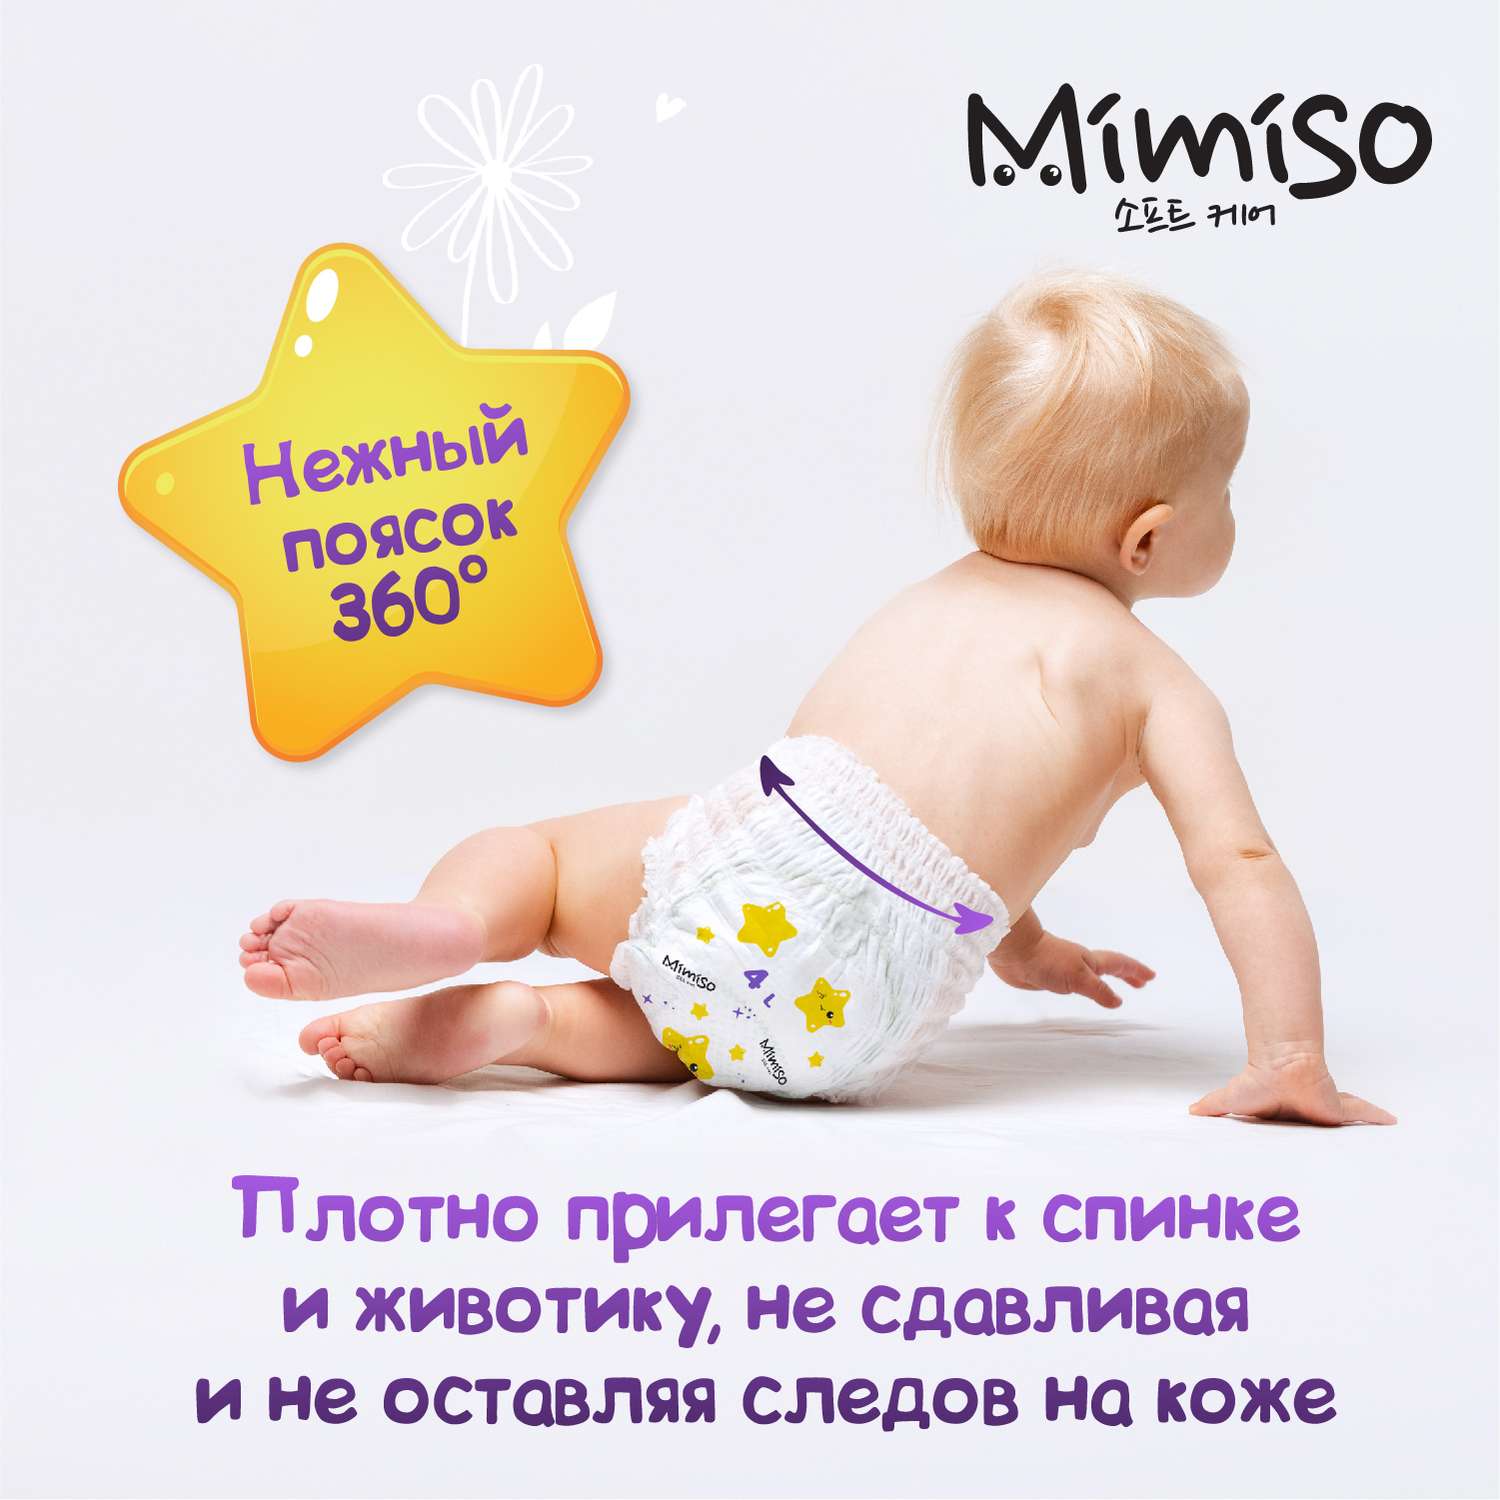 Трусики Mimiso одноразовые для детей 5/XL 13-20 кг 36шт - фото 7